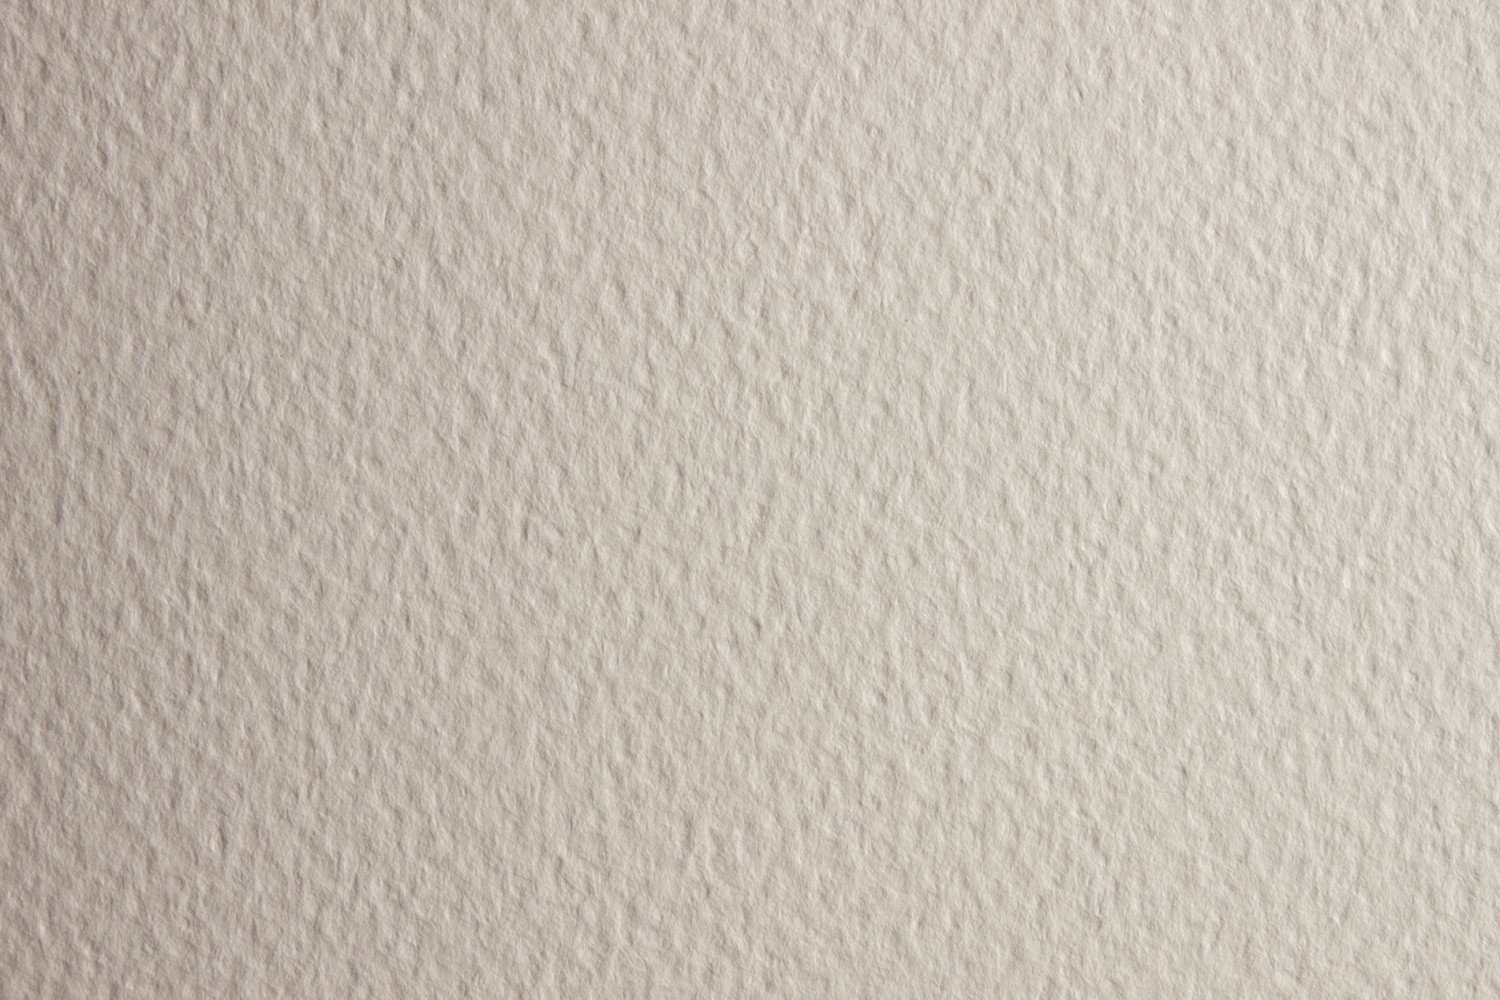 Papier aquarelle, blanc, A2, 420x594 mm, 200 g, 100 flles/ 1 pk